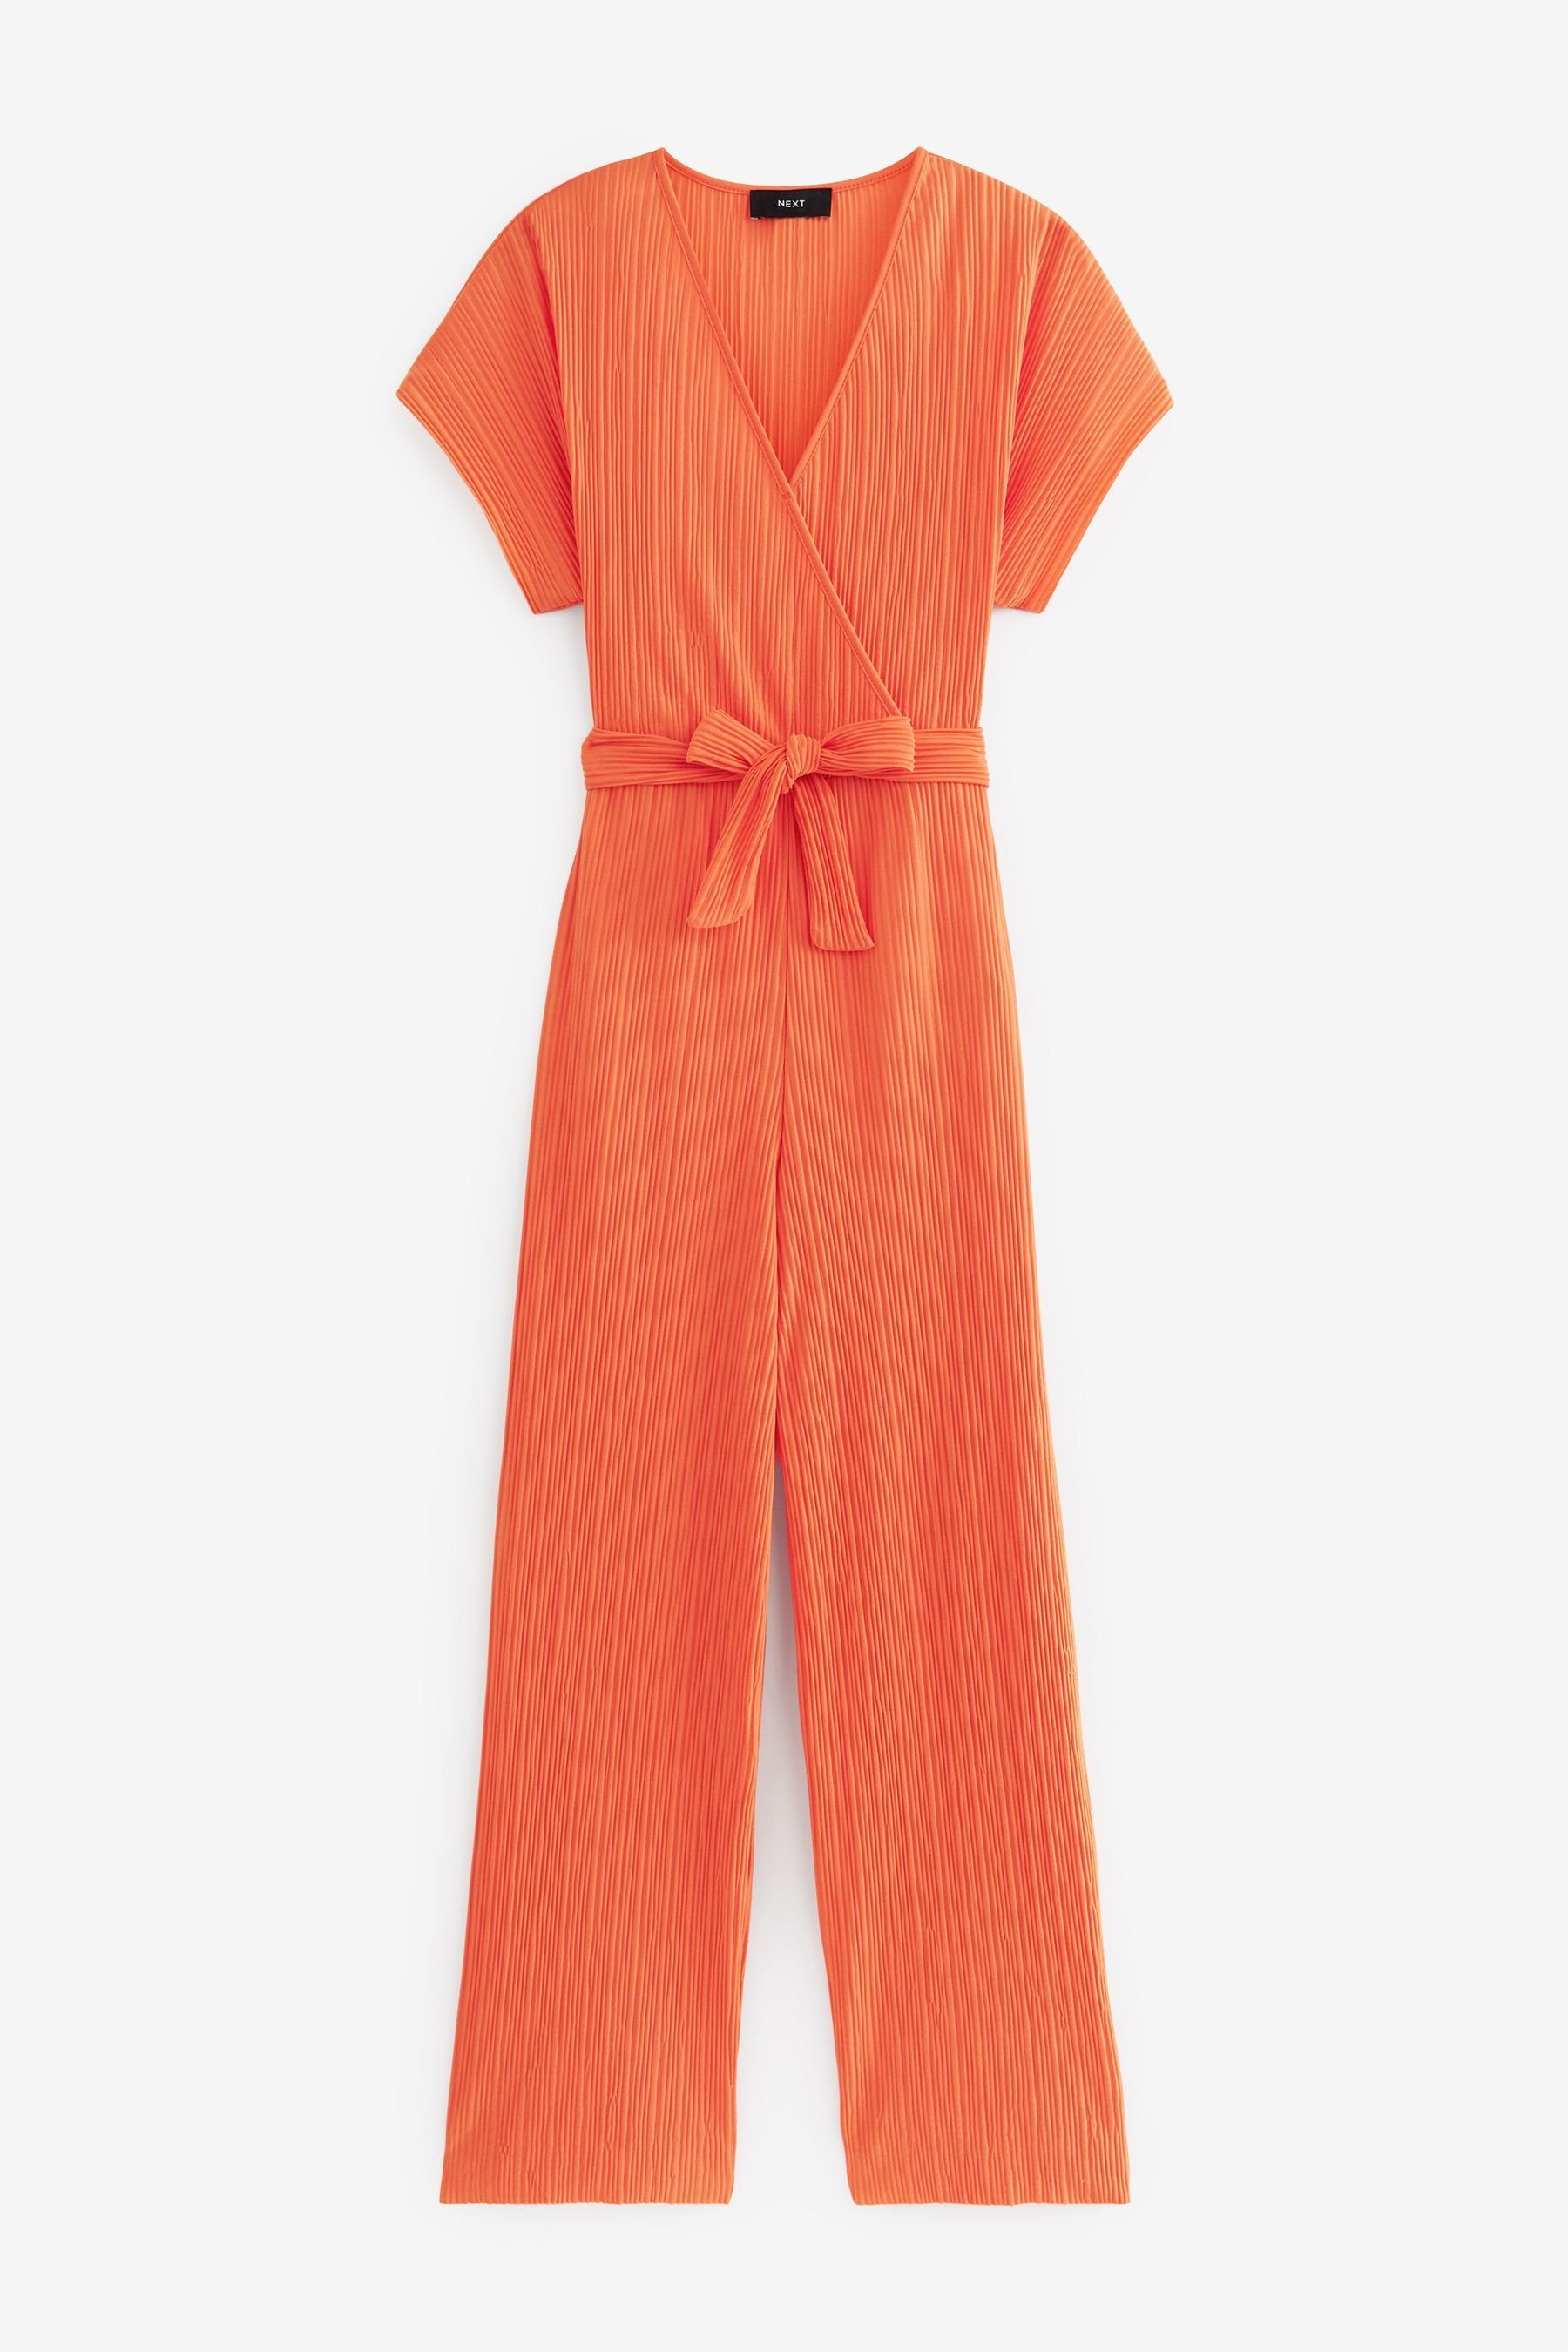 Damen Overall Farbe Orange - MOHITO - 9660V-23X